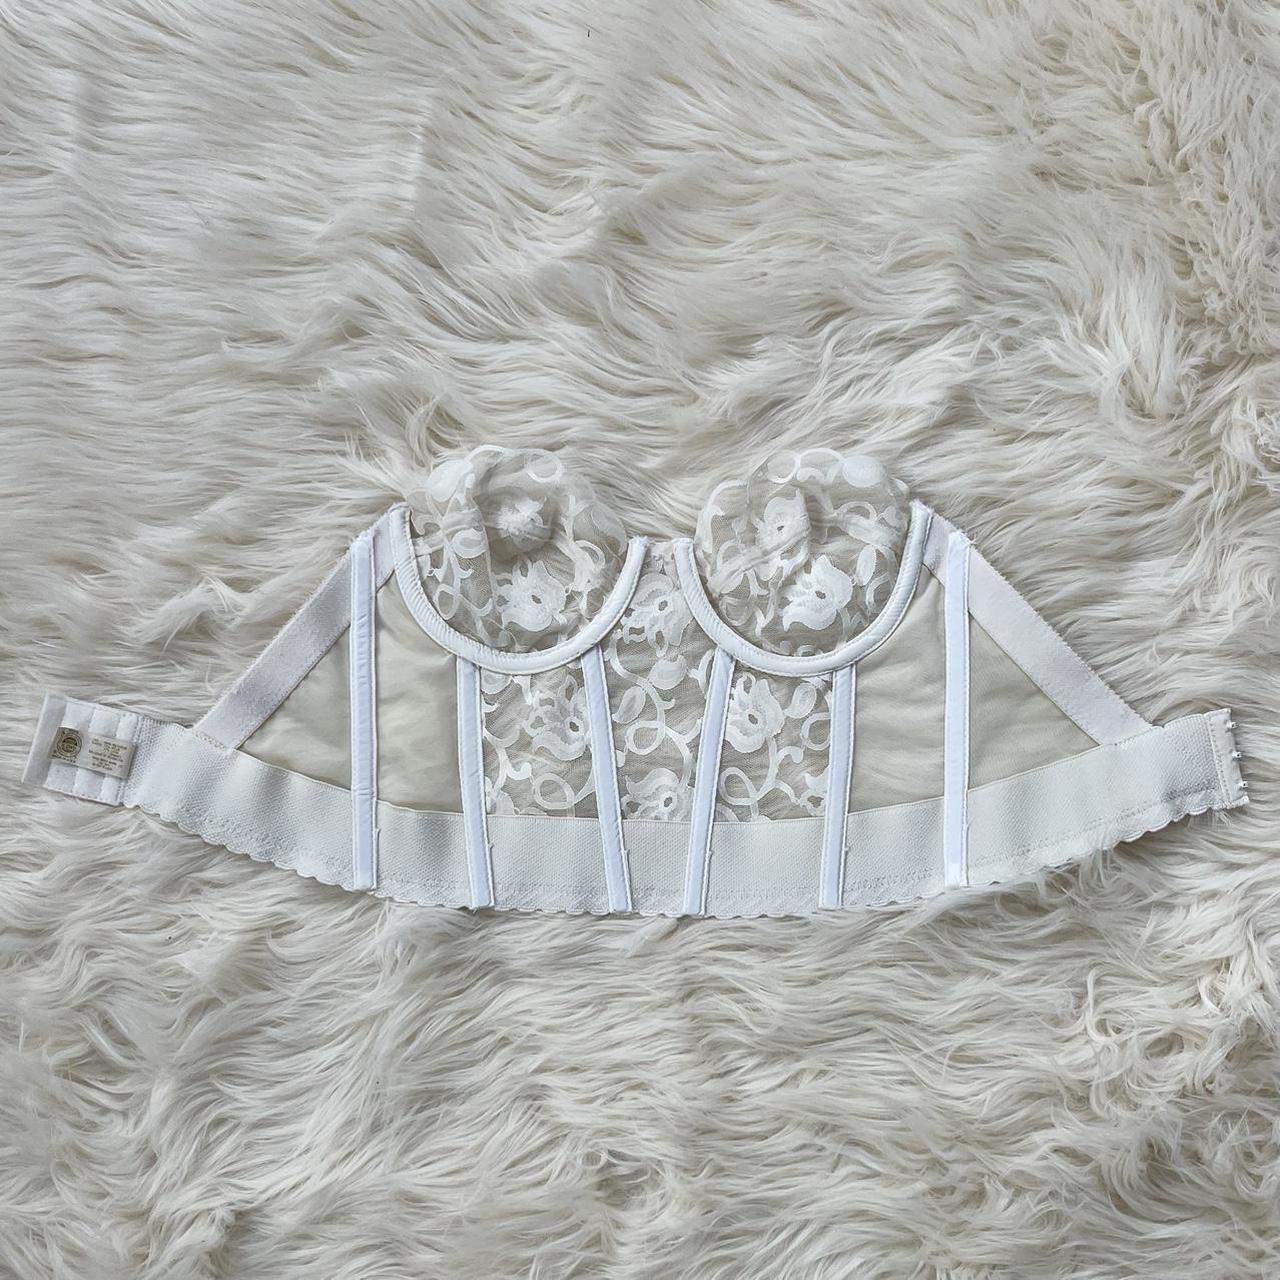 Victoria's Secret Vintage Y2K white corset bustier bra 34B Size undefined -  $67 - From Prairie